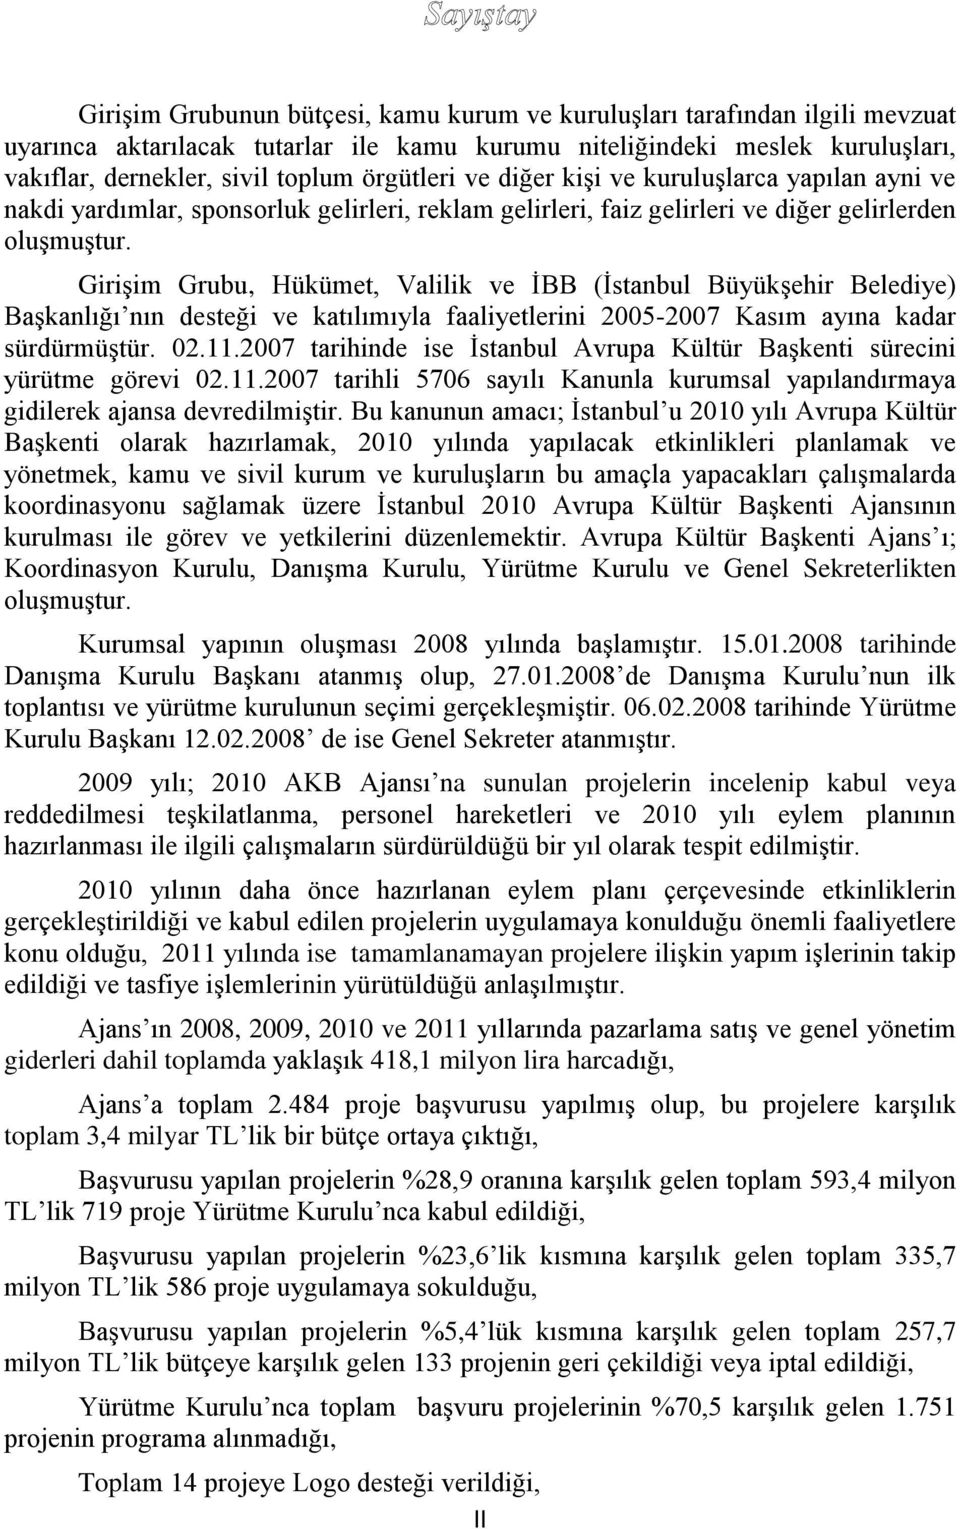 Girişim Grubu, Hükümet, Valilik ve İBB (İstanbul Büyükşehir Belediye) Başkanlığı nın desteği ve katılımıyla faaliyetlerini 2005-2007 Kasım ayına kadar sürdürmüştür. 02.11.